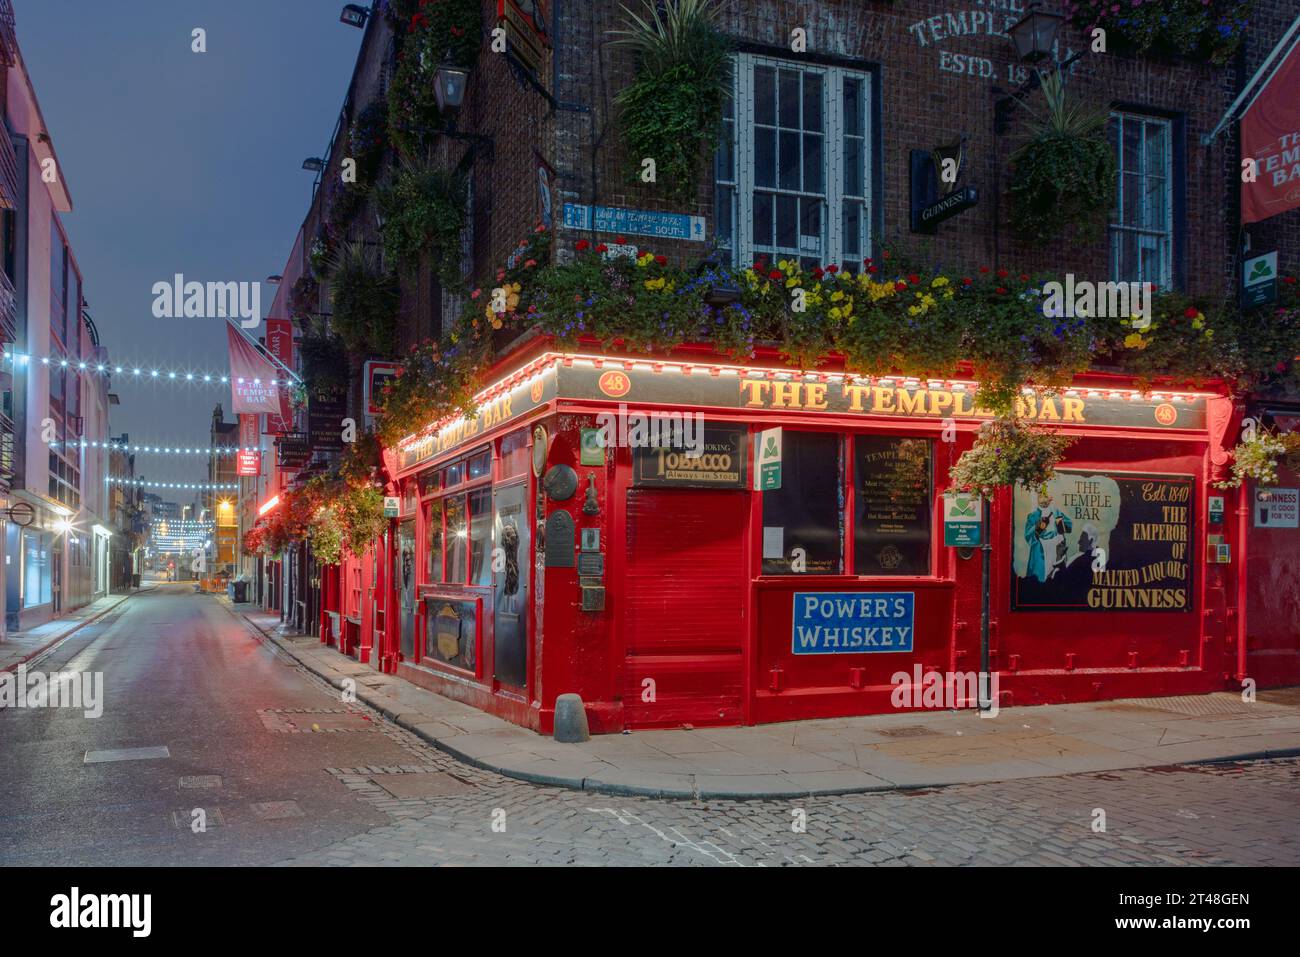 Der Temple Bar Pub ist ein traditioneller irischer Pub in Dublin, Irland, der für seine Live-Musik, lebhafte Atmosphäre und die berühmte Whiskey-Auswahl berühmt ist. Stockfoto